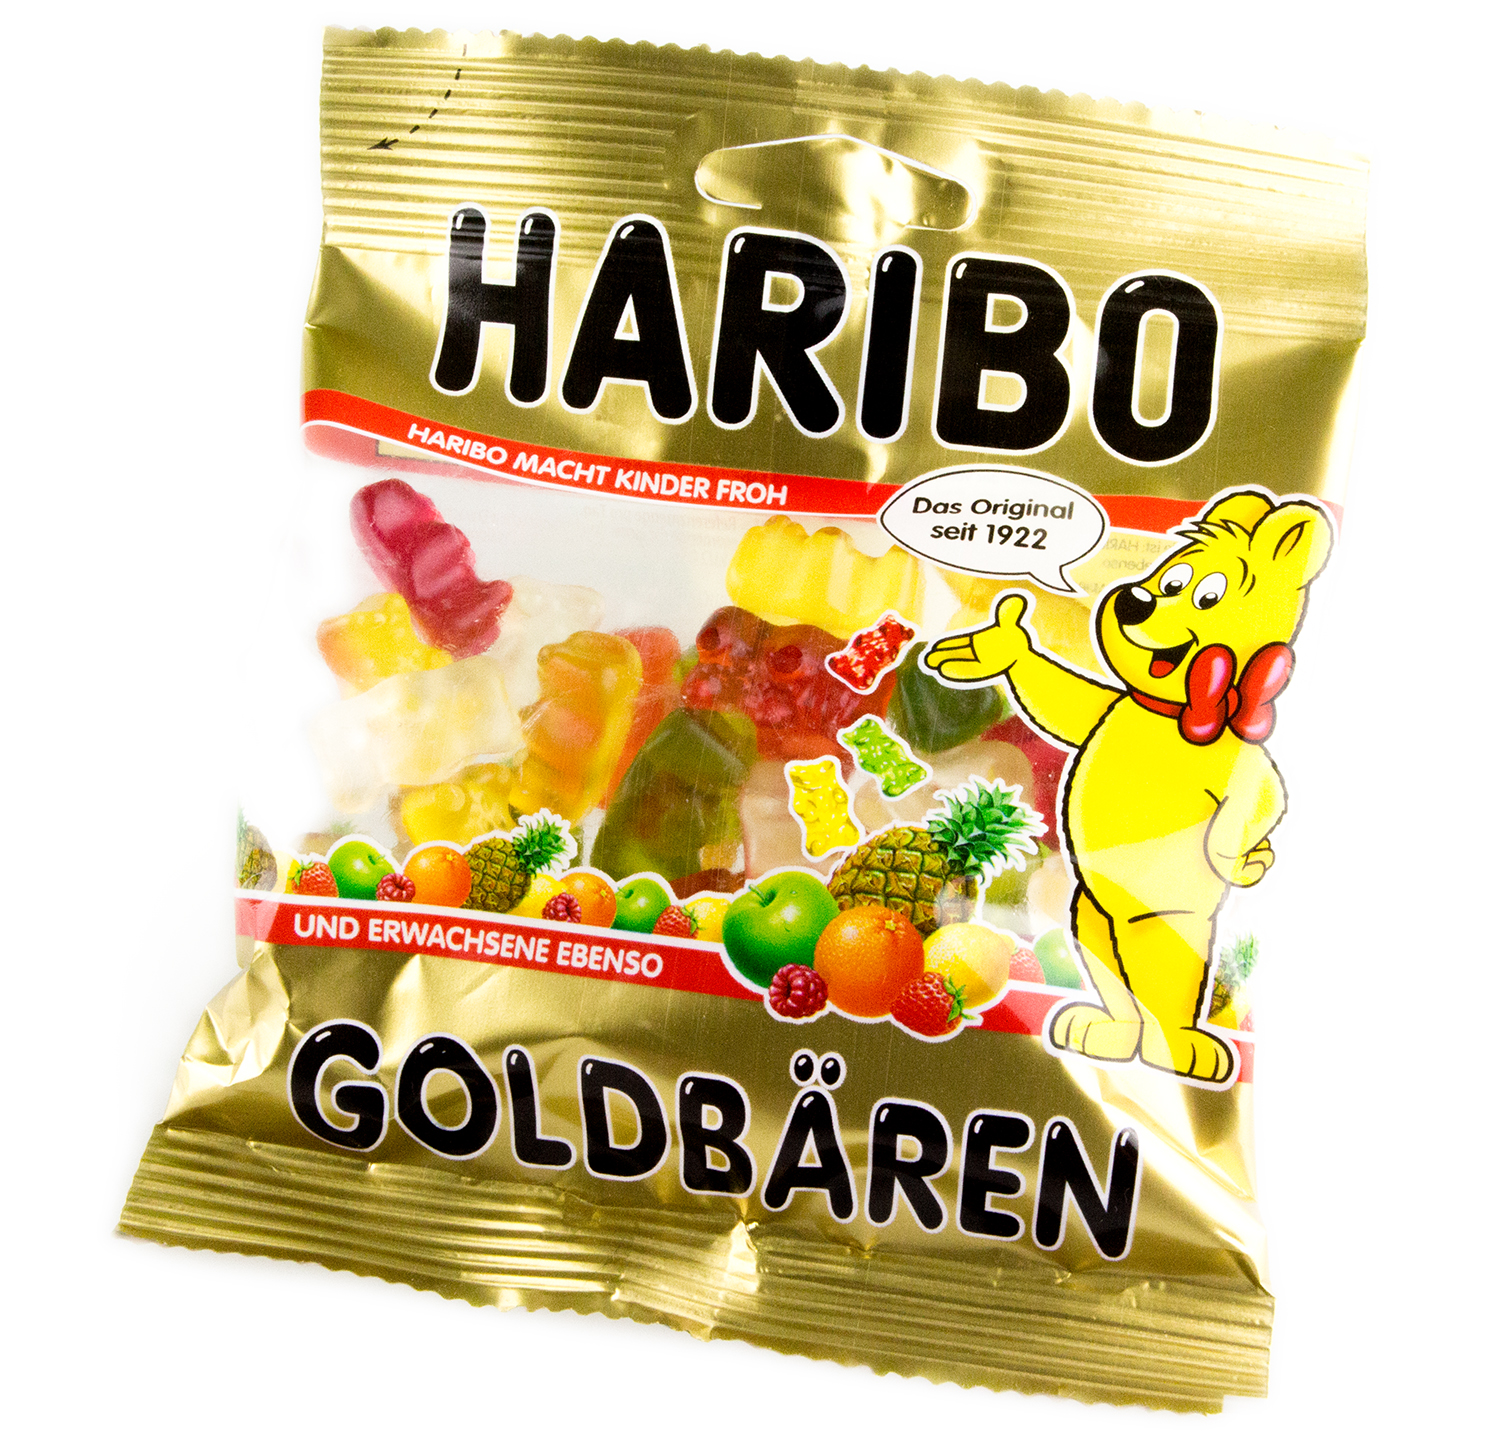 HARIBO Goldbären 100g